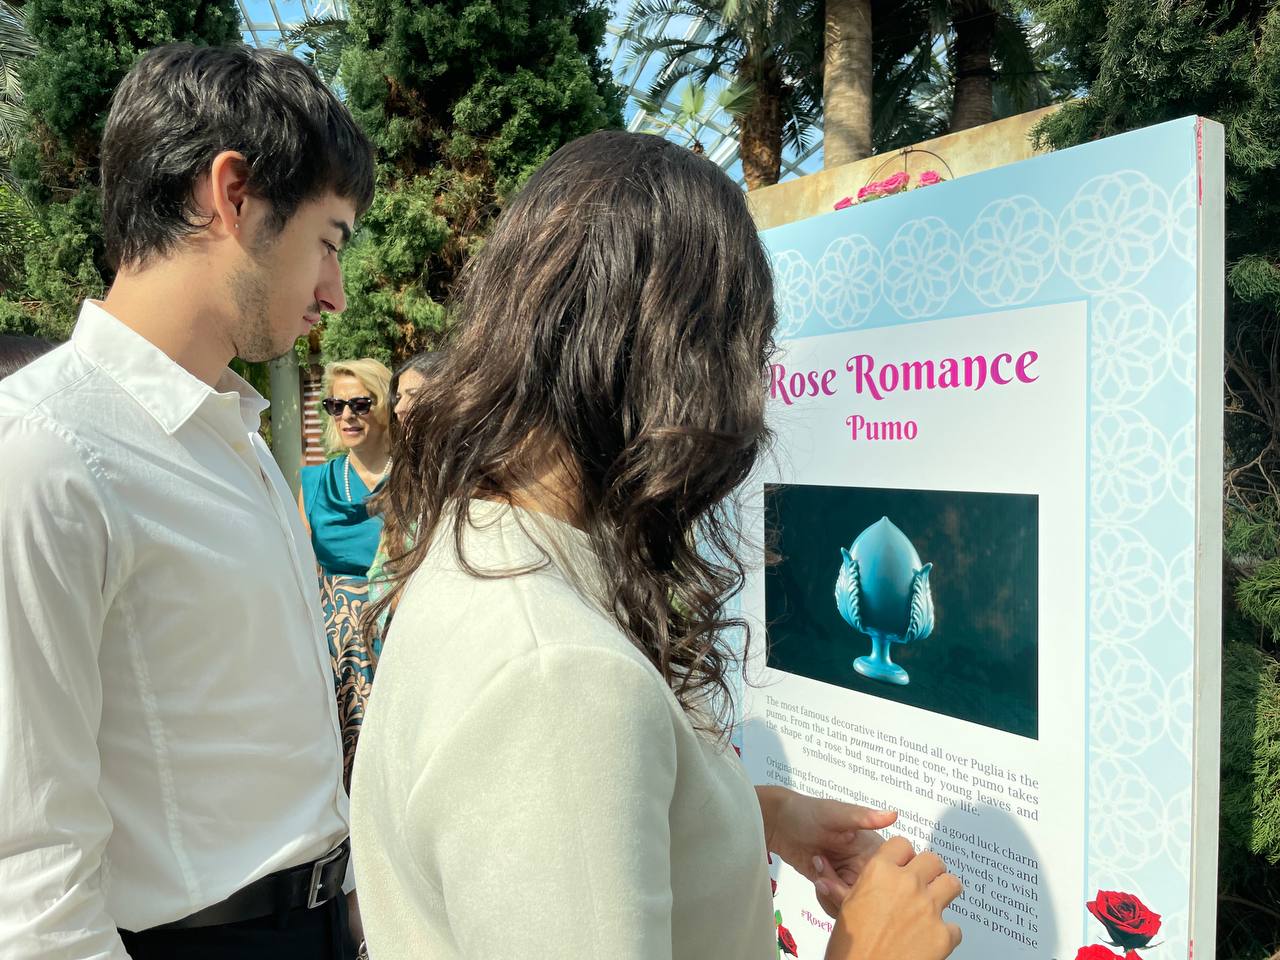 Galleria La Puglia a Singapore nel giorno della Festa della Repubblica, al grande evento “Rose Romance” promosso dall'Ambasciata d’Italia - Diapositiva 15 di 22